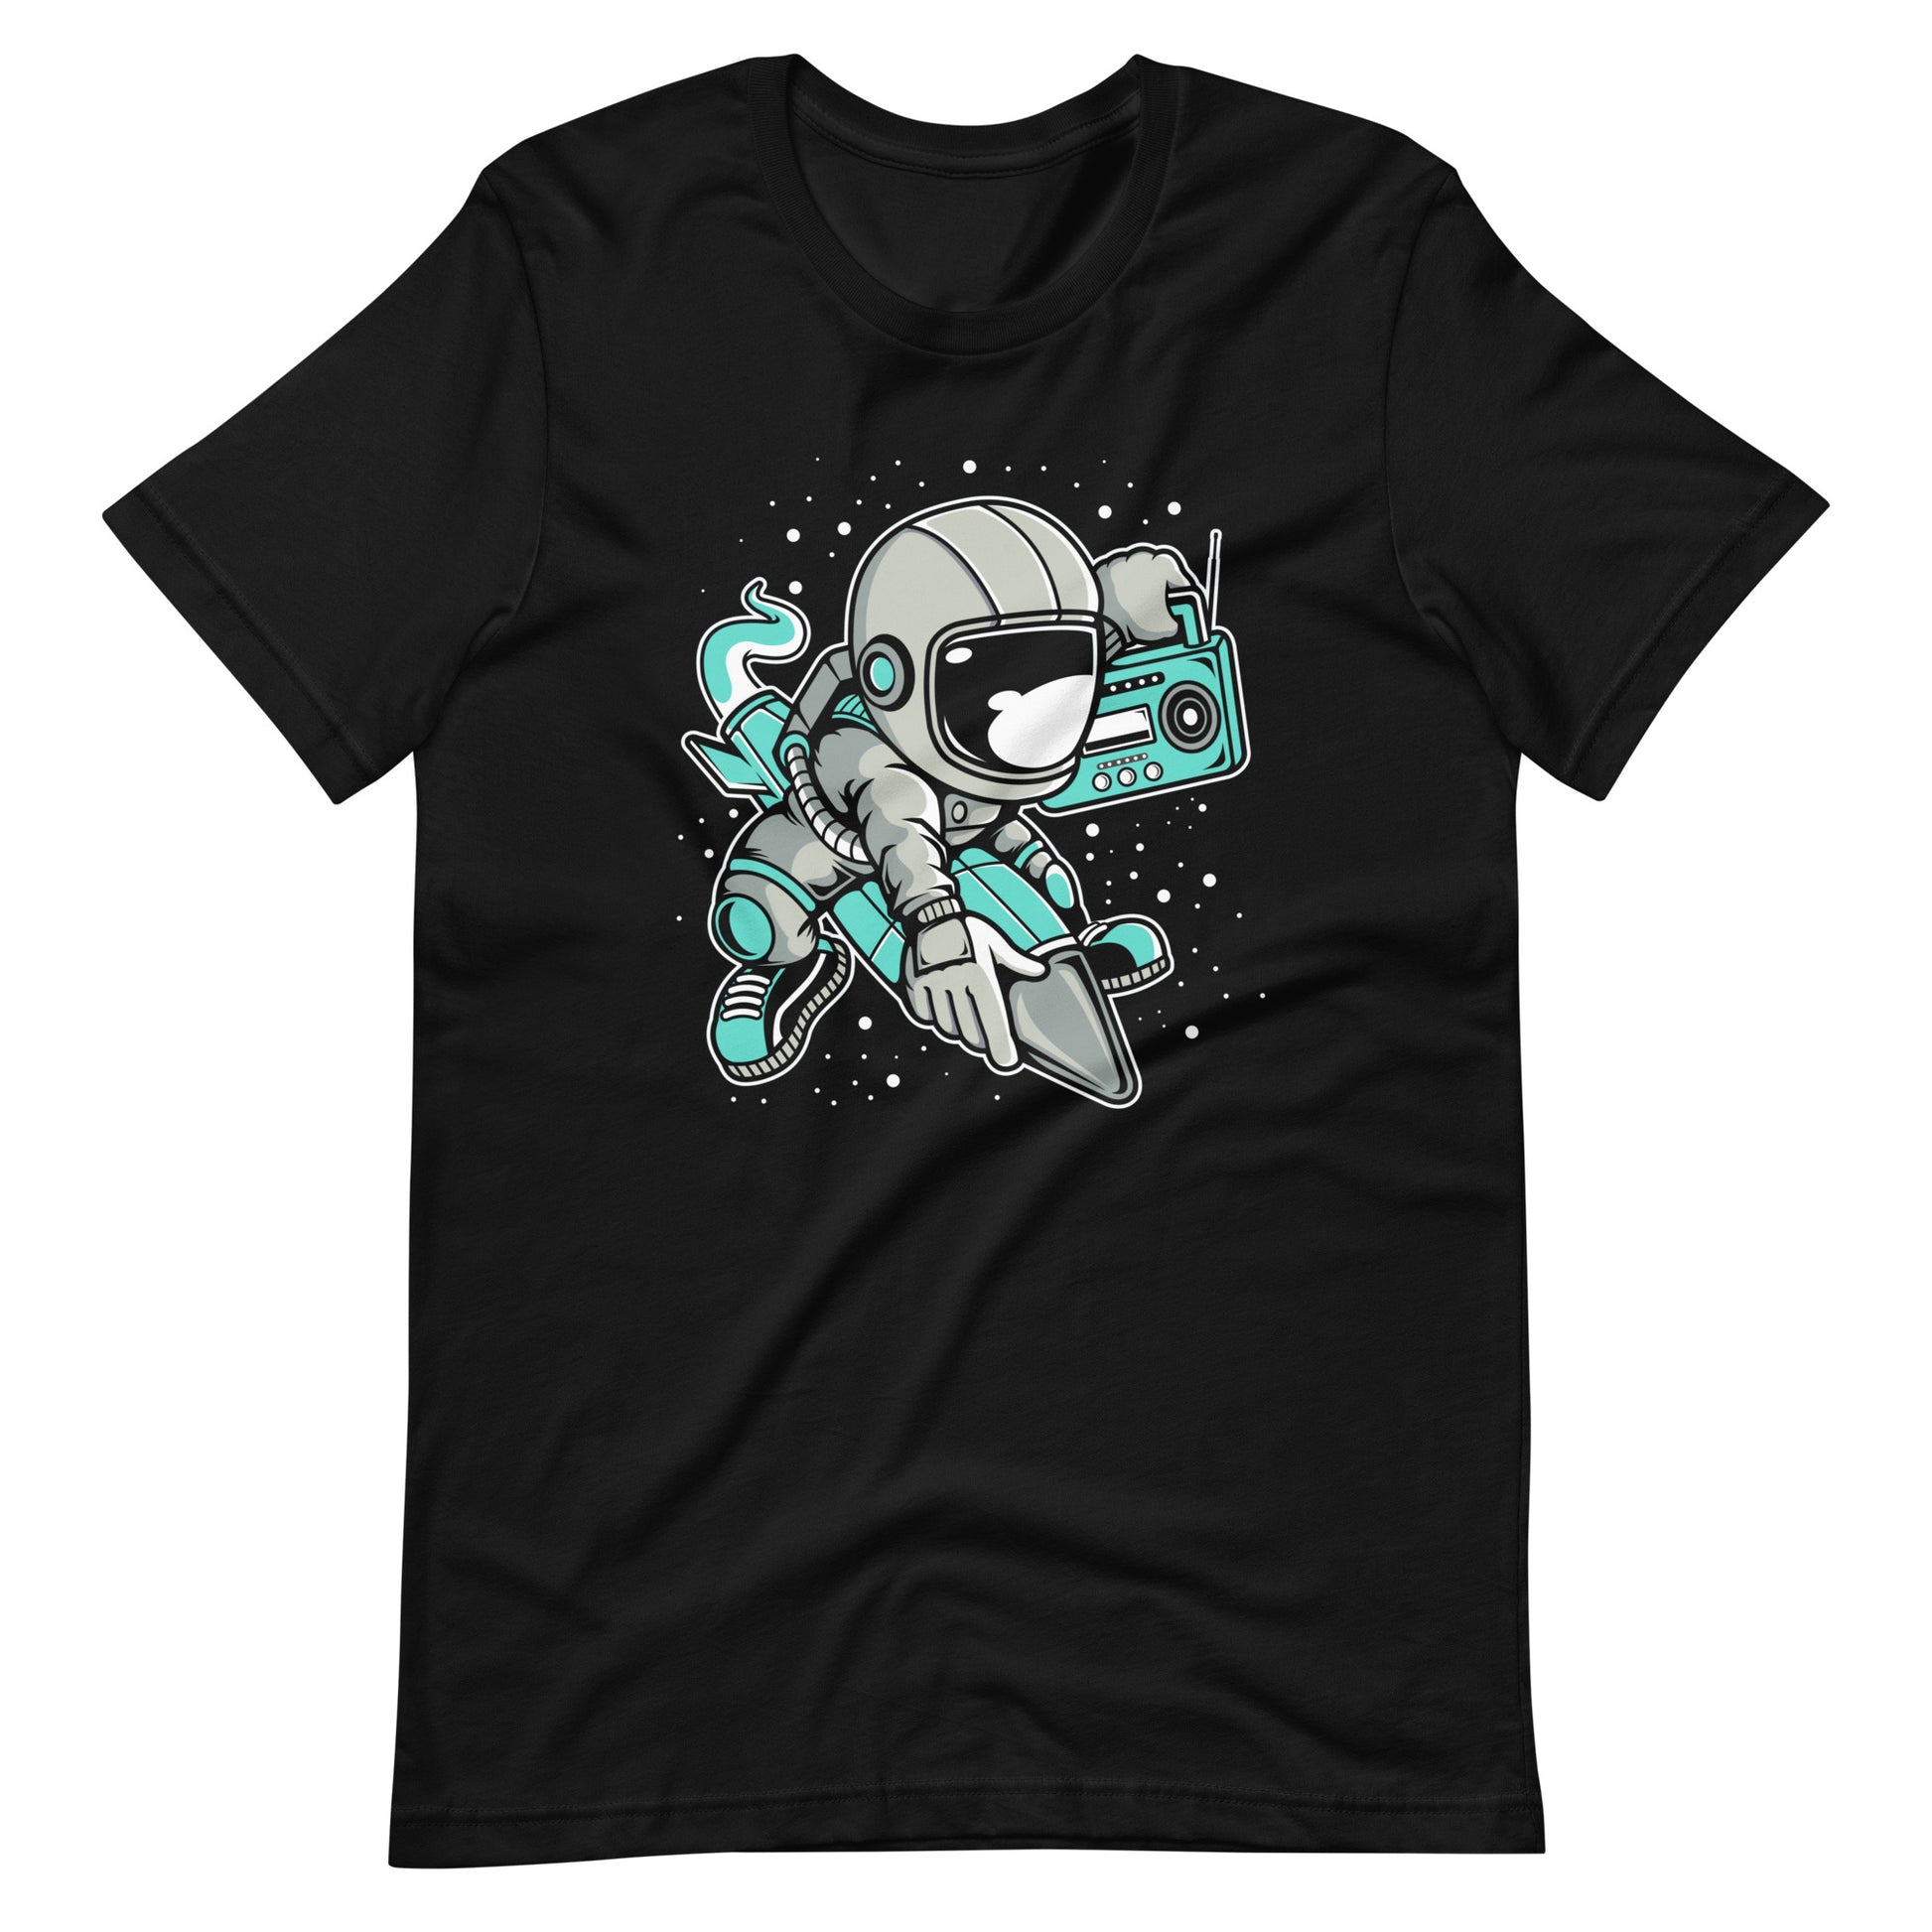 Astronaut Rocket - Men's t-shirt - Black Front